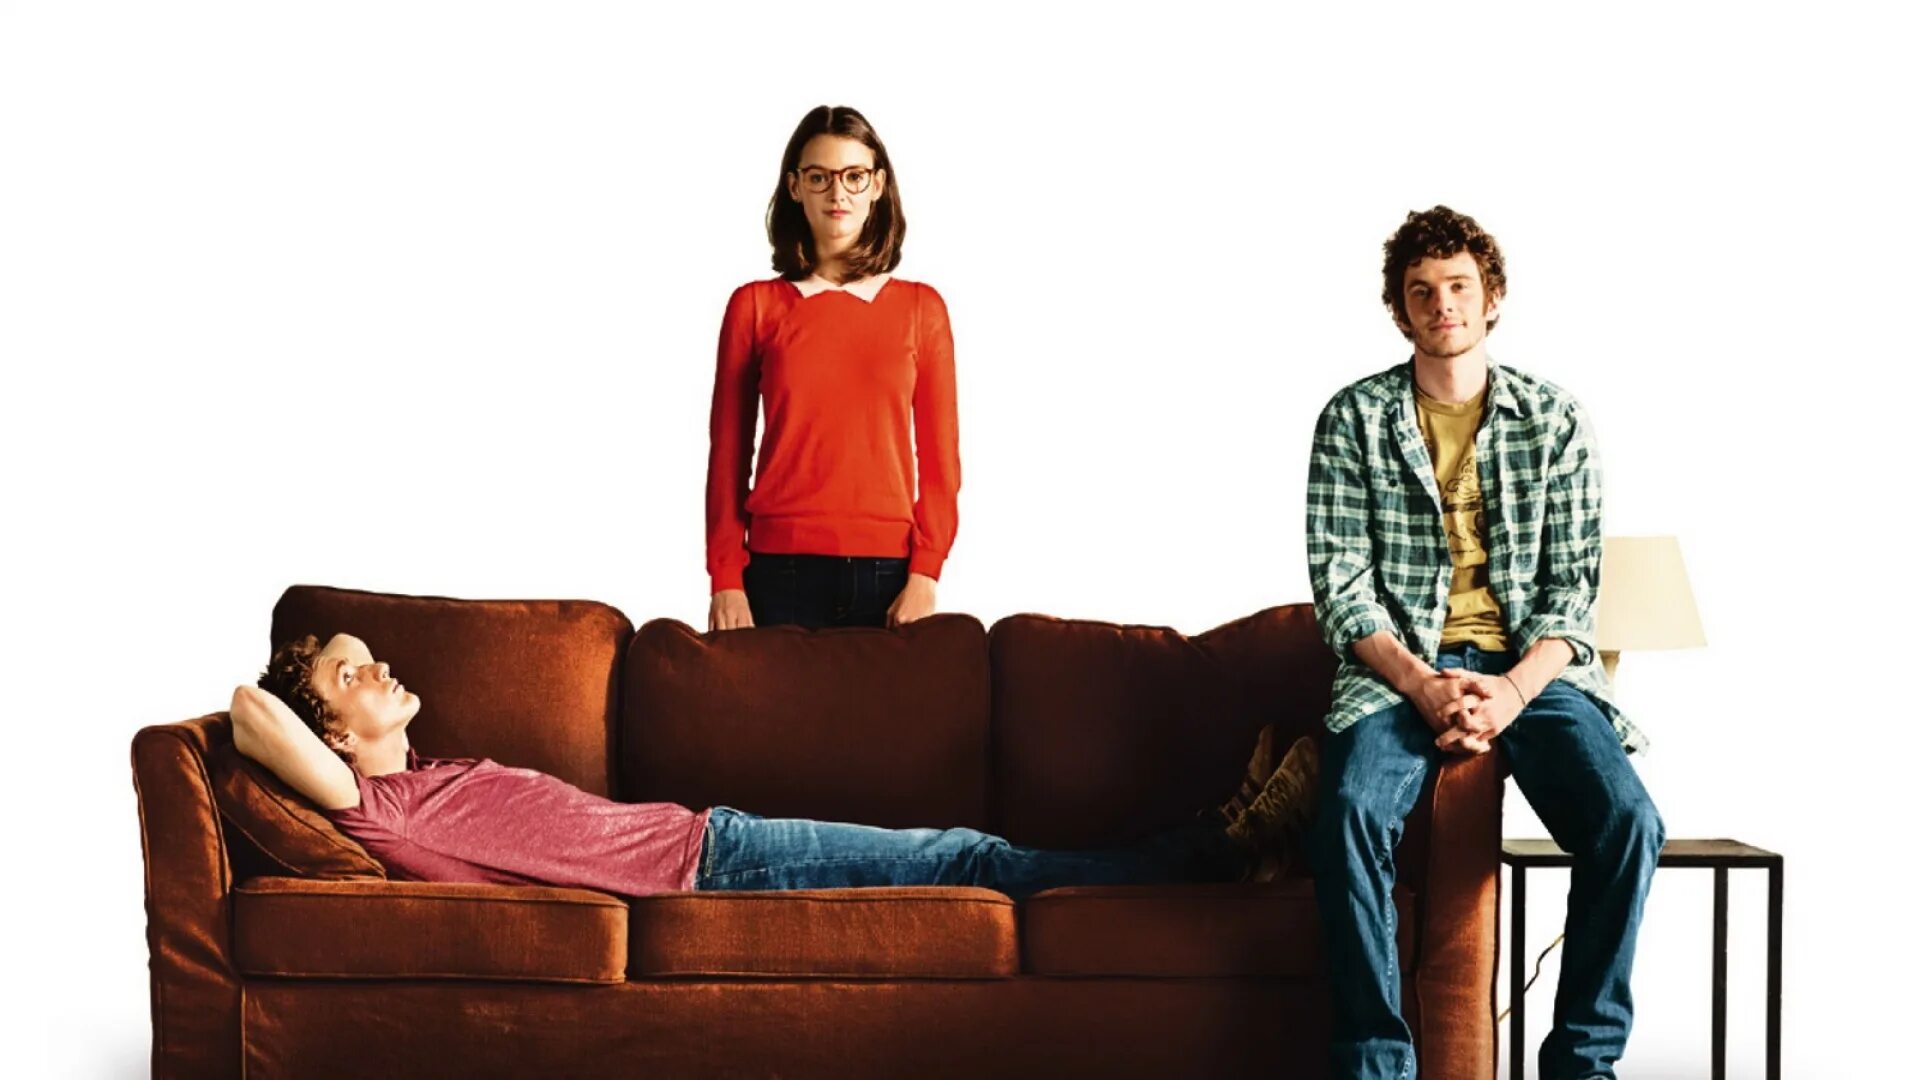 Правила жизни французского парня (2014). Правило жизни французского парня. Персонаж сидит на диване. Et sit